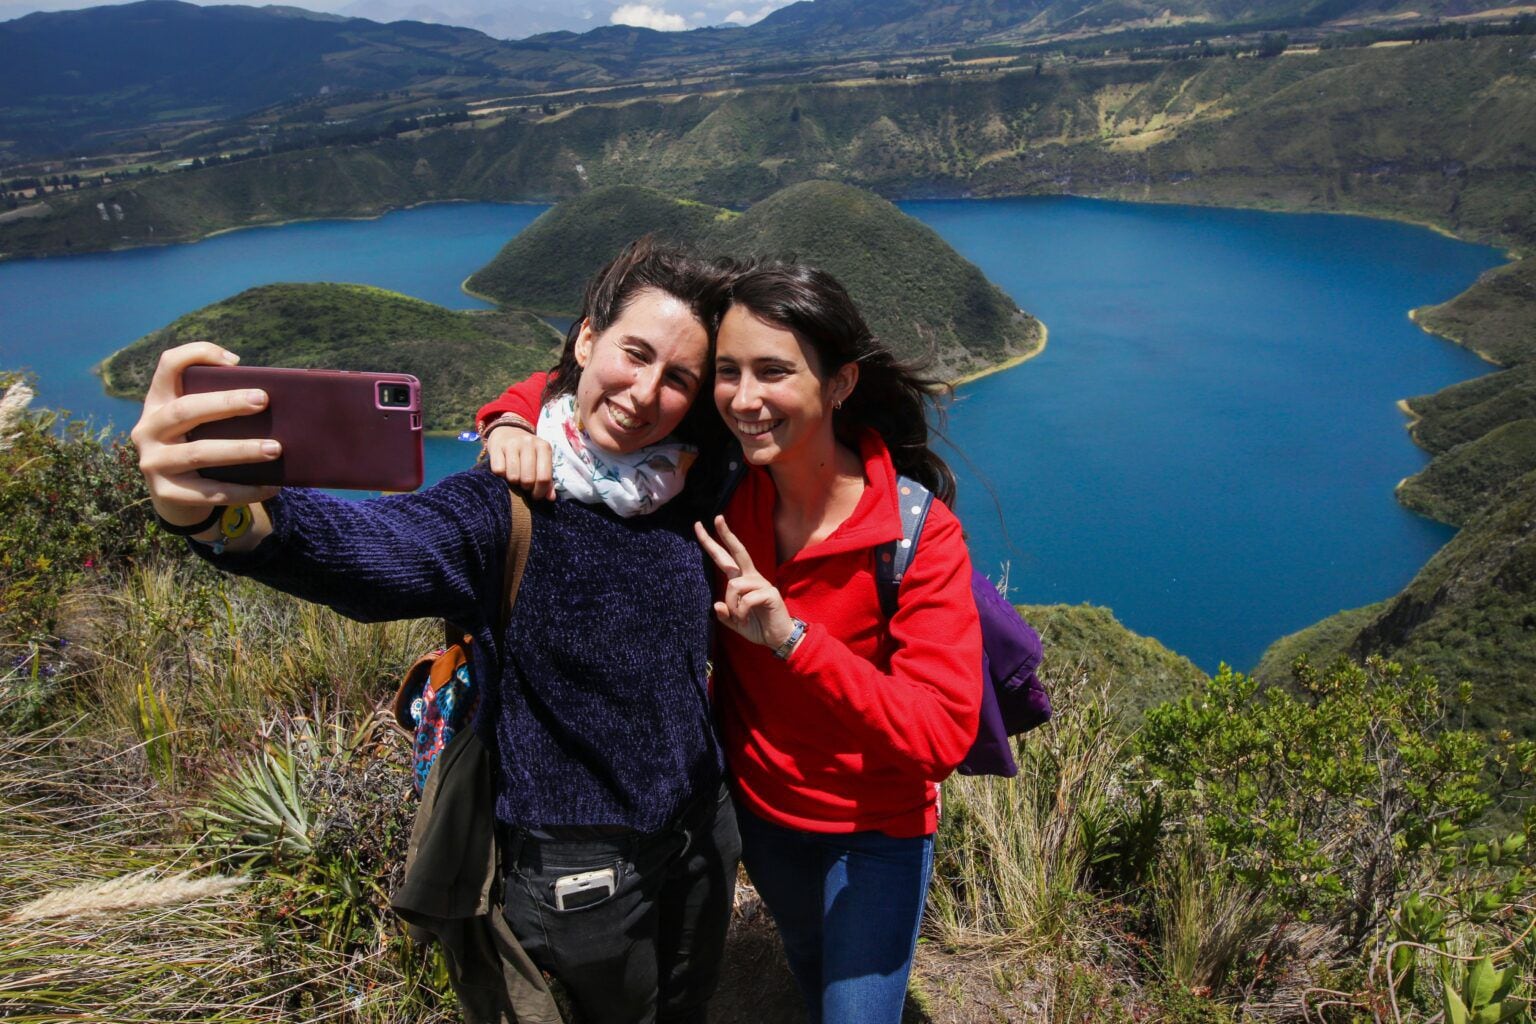 Ecuador crea guía turística para mujeres viajeras y grupos vulnerables